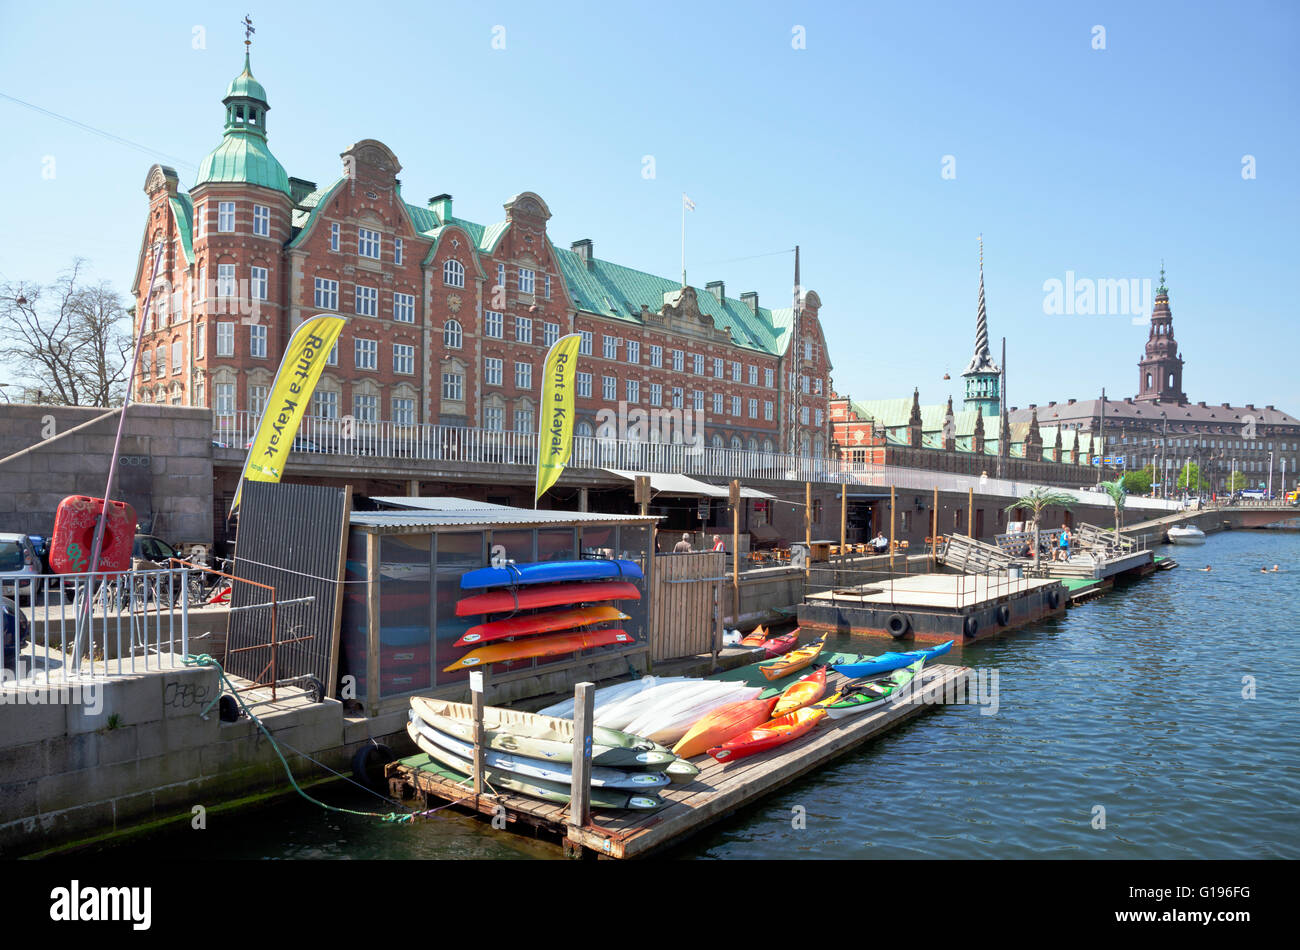 République de kayak dans le port intérieur, dans le centre de Copenhague, location de kayak et un café et un bar au bord de l'eau avec plage flottante et canal tours en kayaks. Banque D'Images